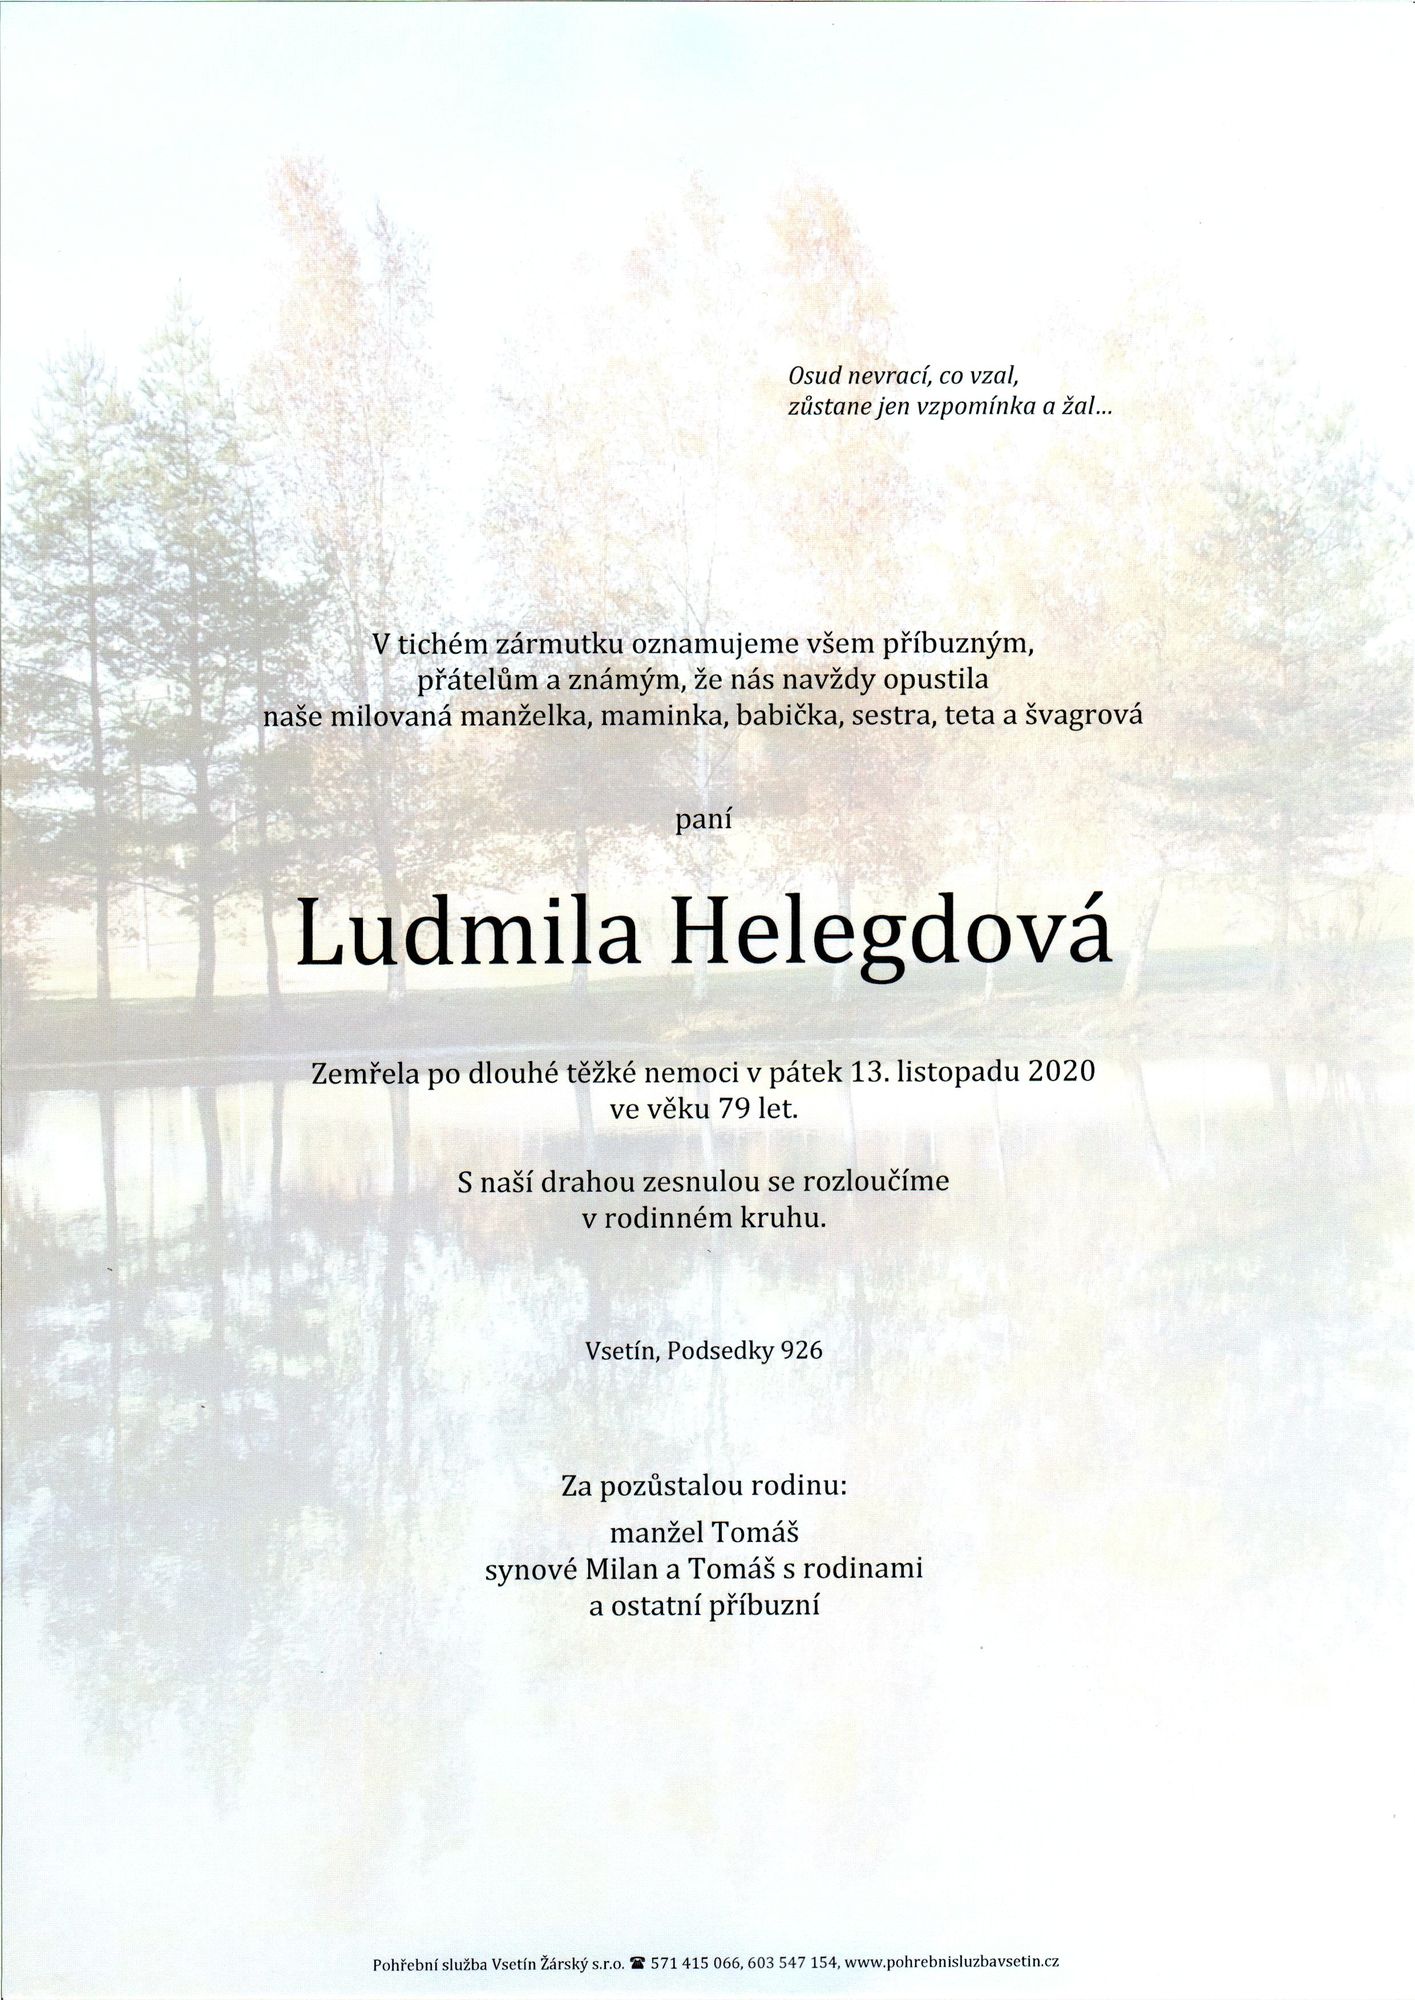 Ludmila Helegdová